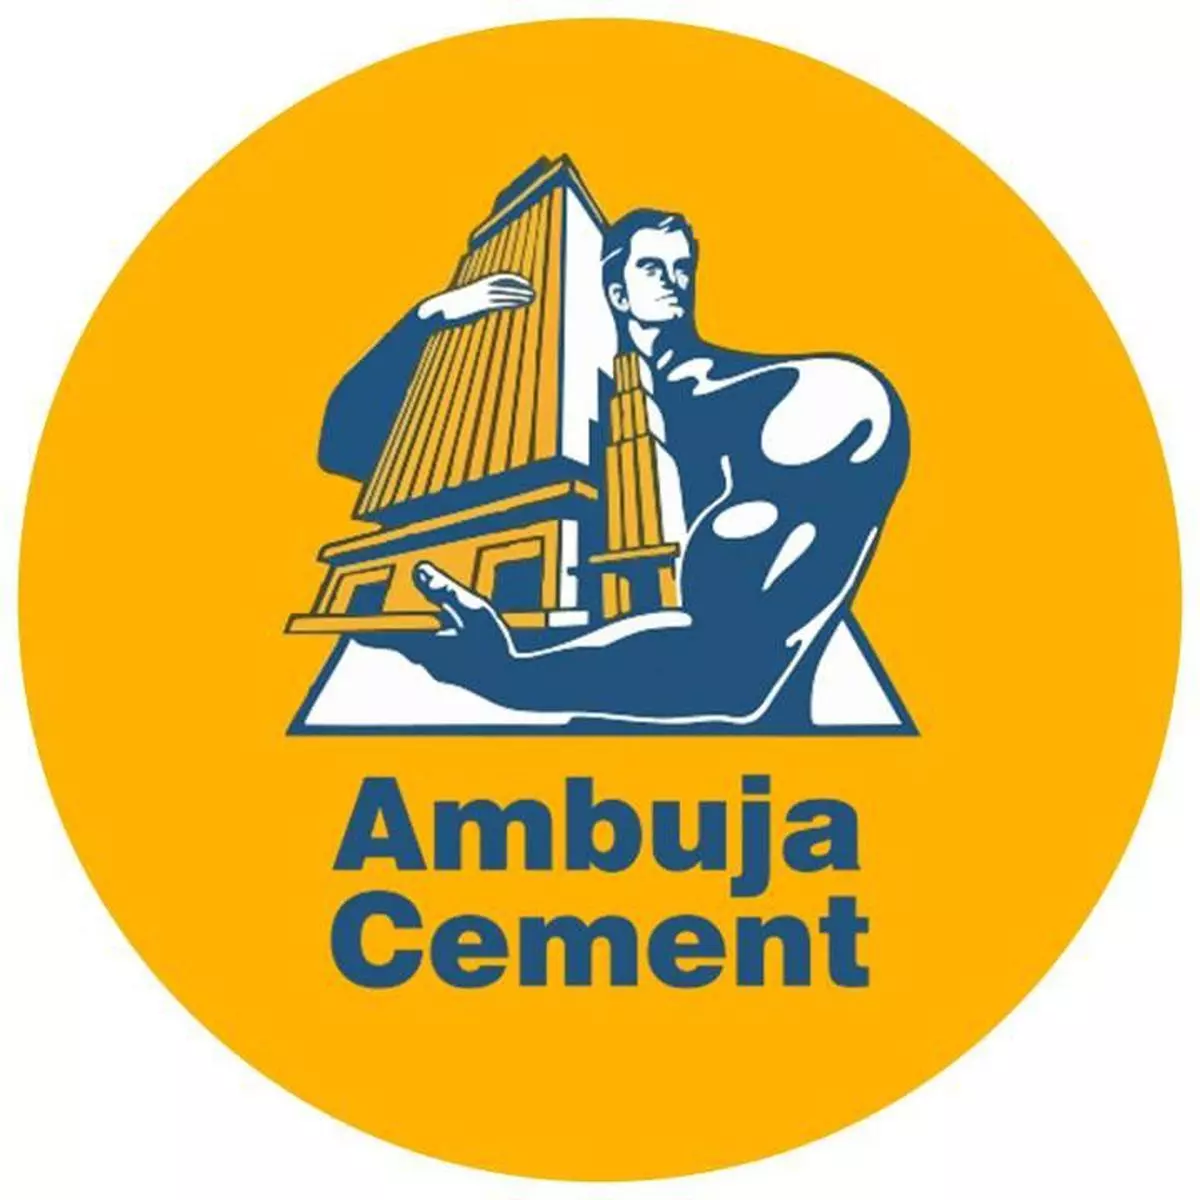 अंबुजा सीमेंट की योजना ₹1000 करोड़- झारखंड में प्लांट